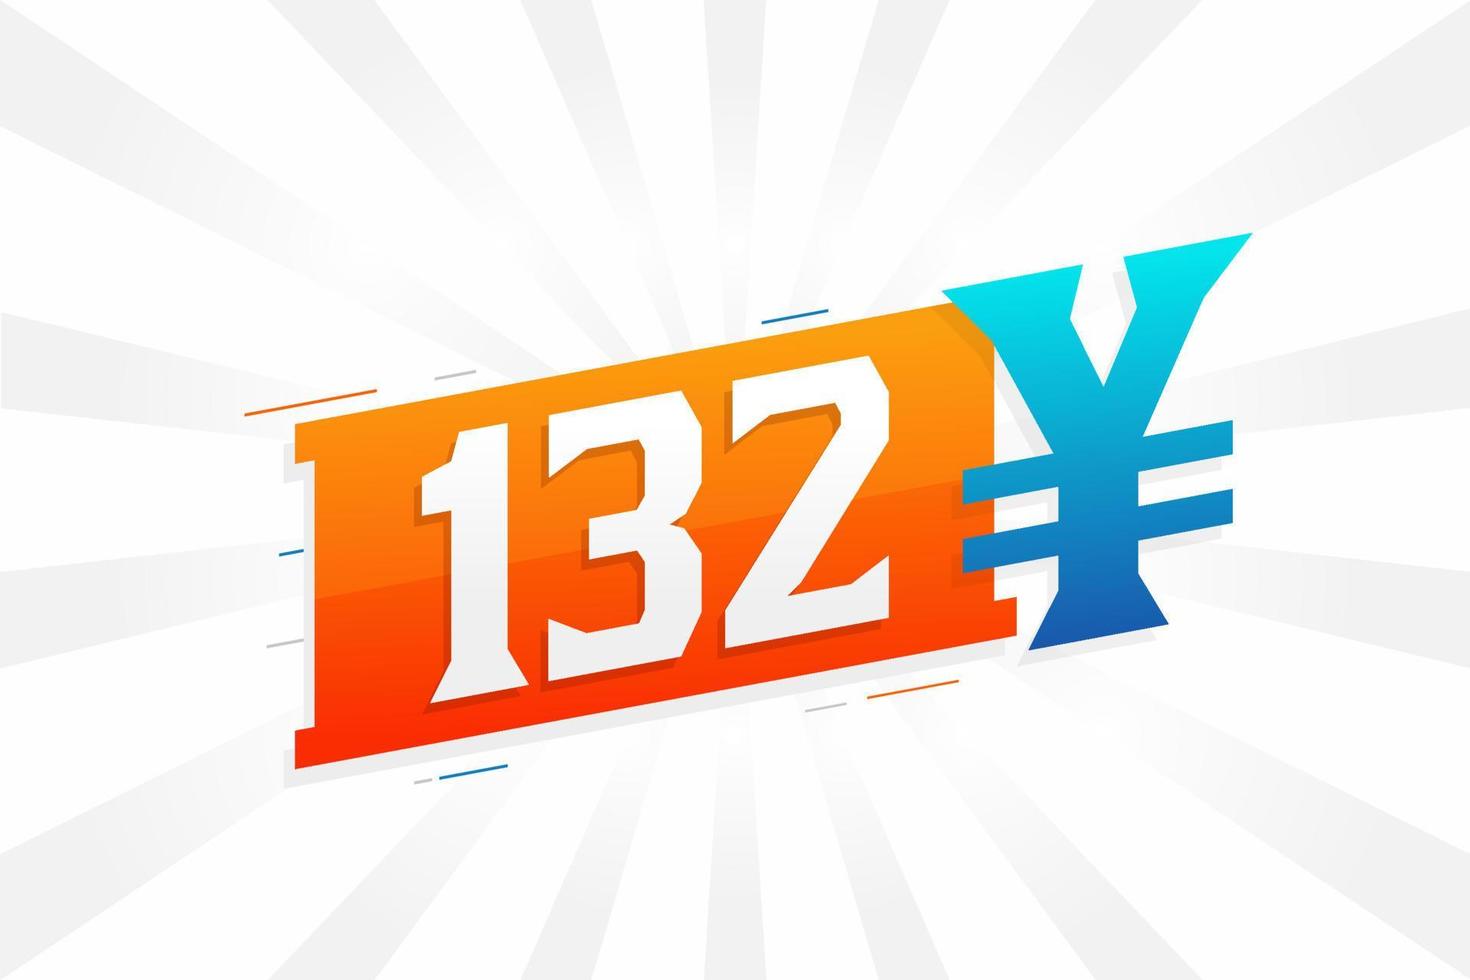 132 yuan symbole de texte vectoriel de devise chinoise. 132 yen monnaie japonaise vecteur de stock d'argent